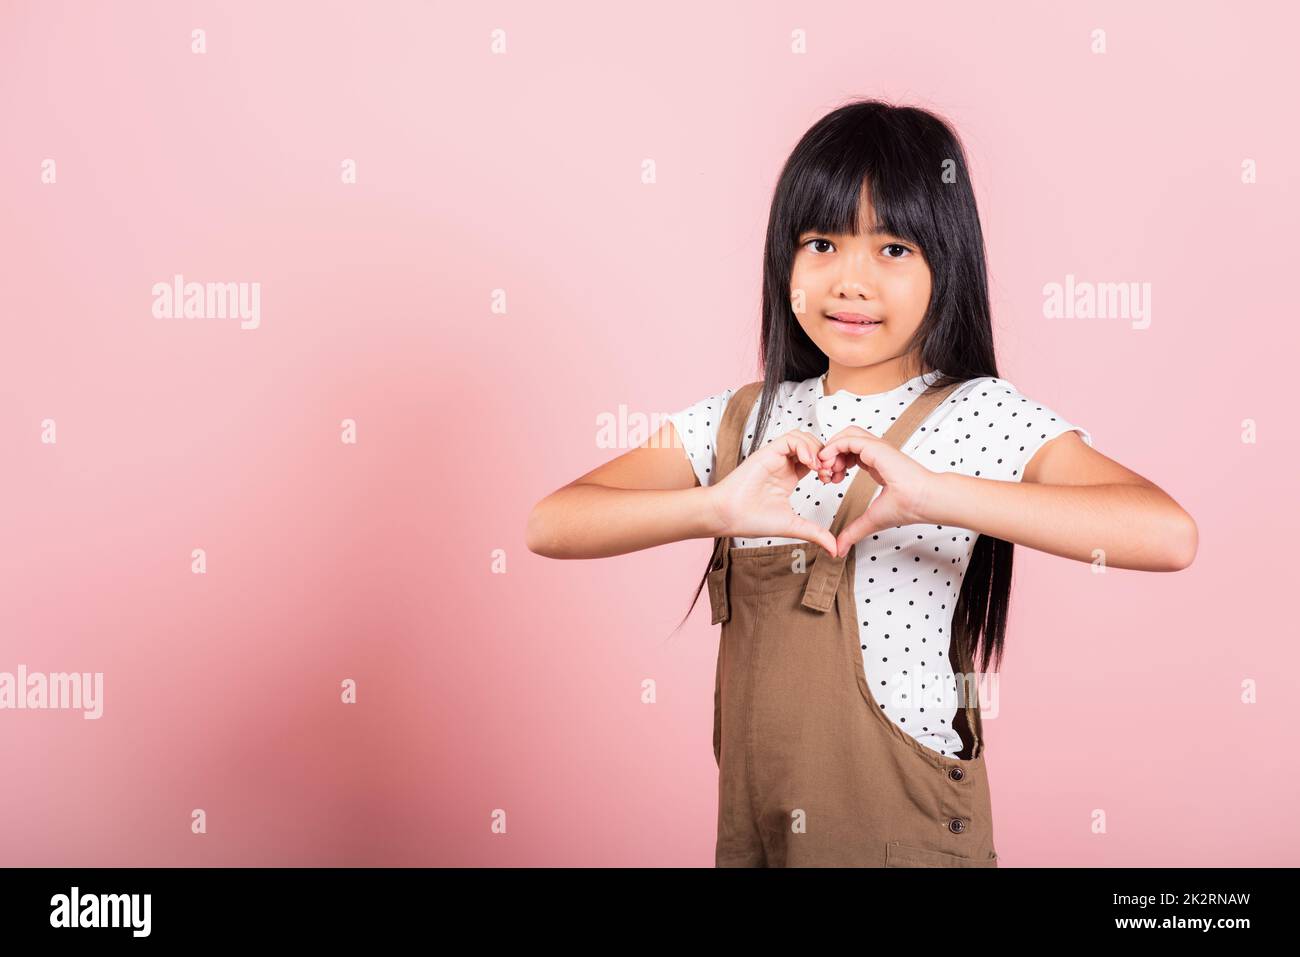 Petit enfant asiatique de 10 ans montrant un cœur Banque D'Images